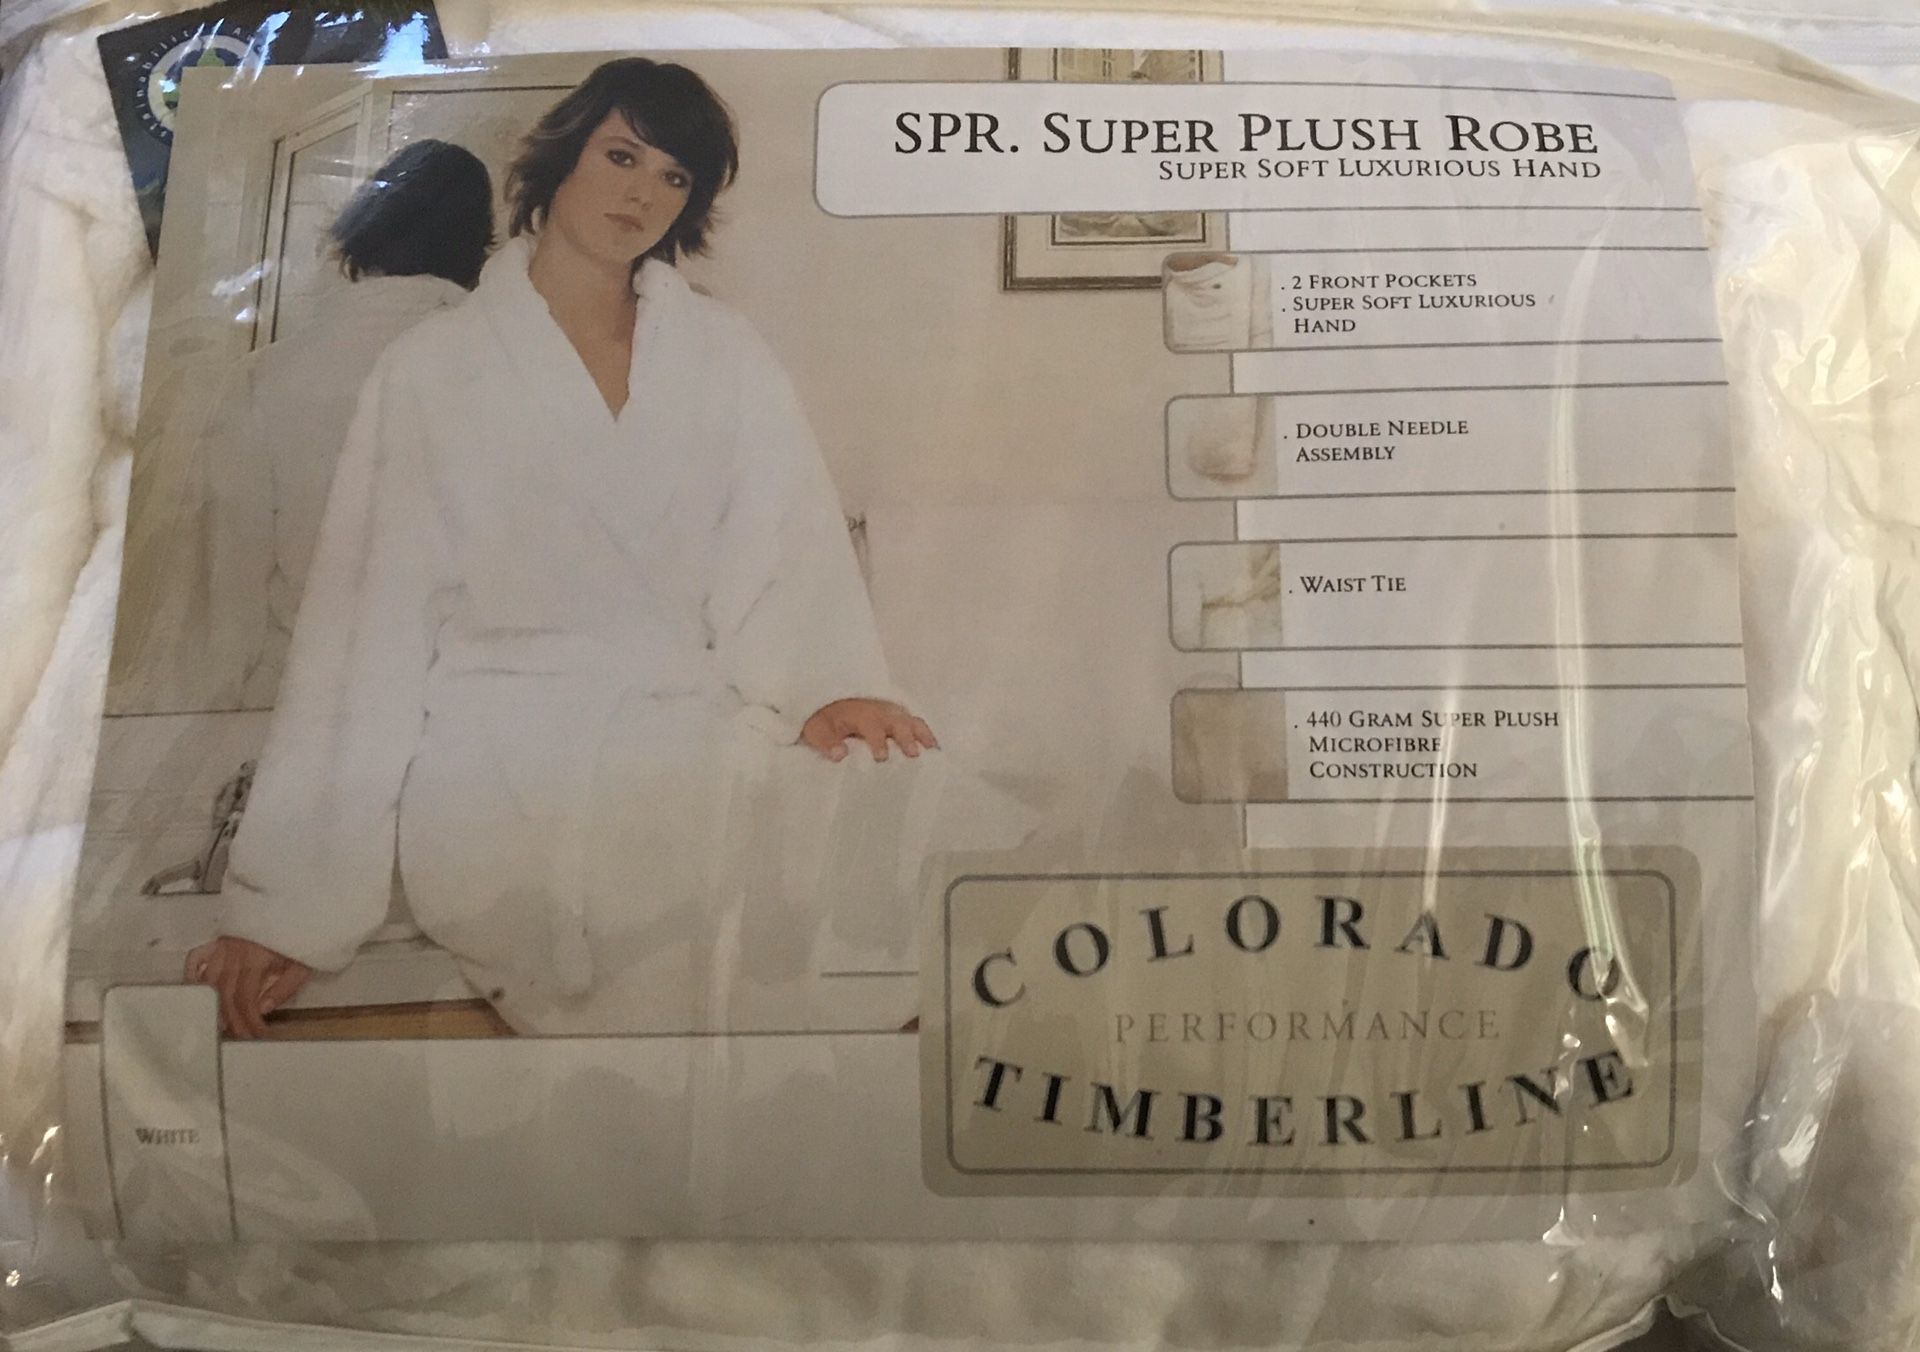 Super Plush White Robe - New PRICE DROP $10